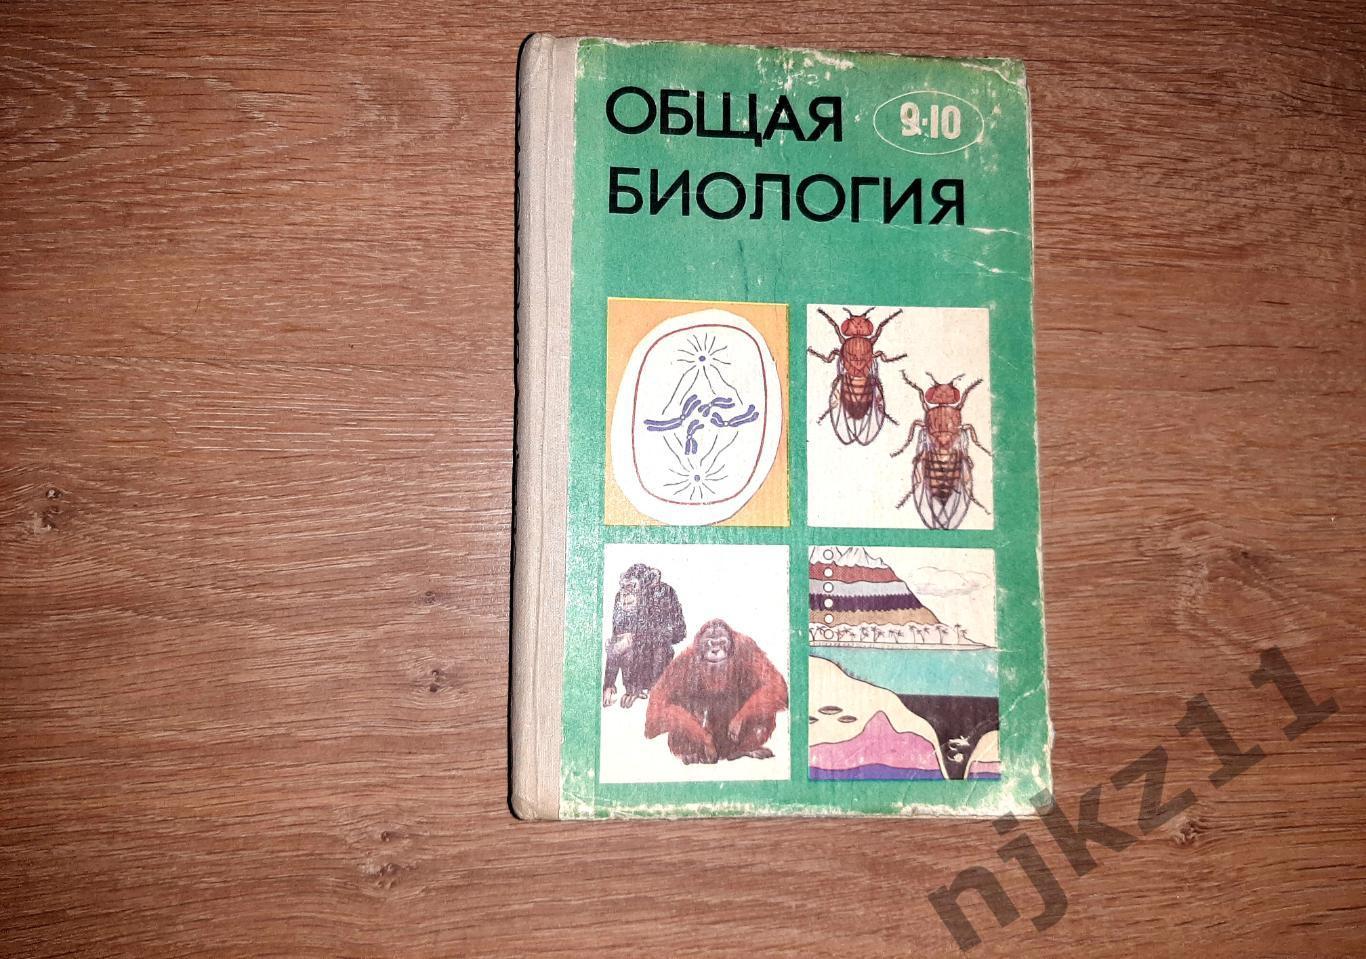 Полянский, Ю.И. Общая биология. Учебник для 9-10 классов 1977г